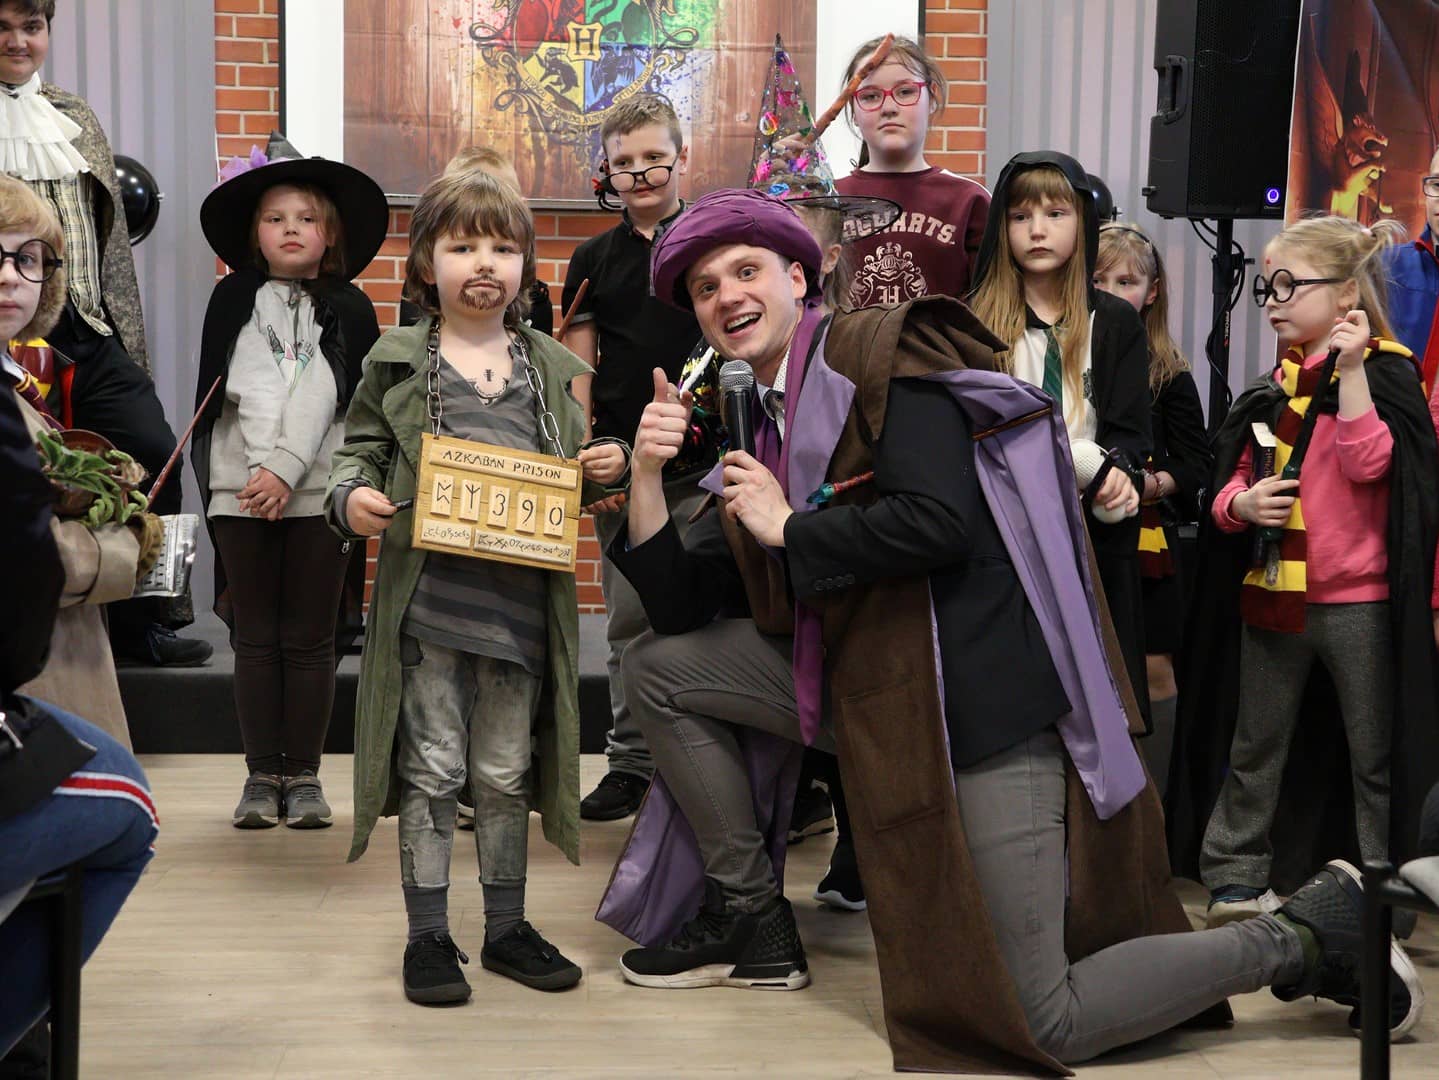 Na zdjęciu dzieci przebrane za postacie z Harrego Pottera wraz z animatorami prowadzącymi wydarzenie